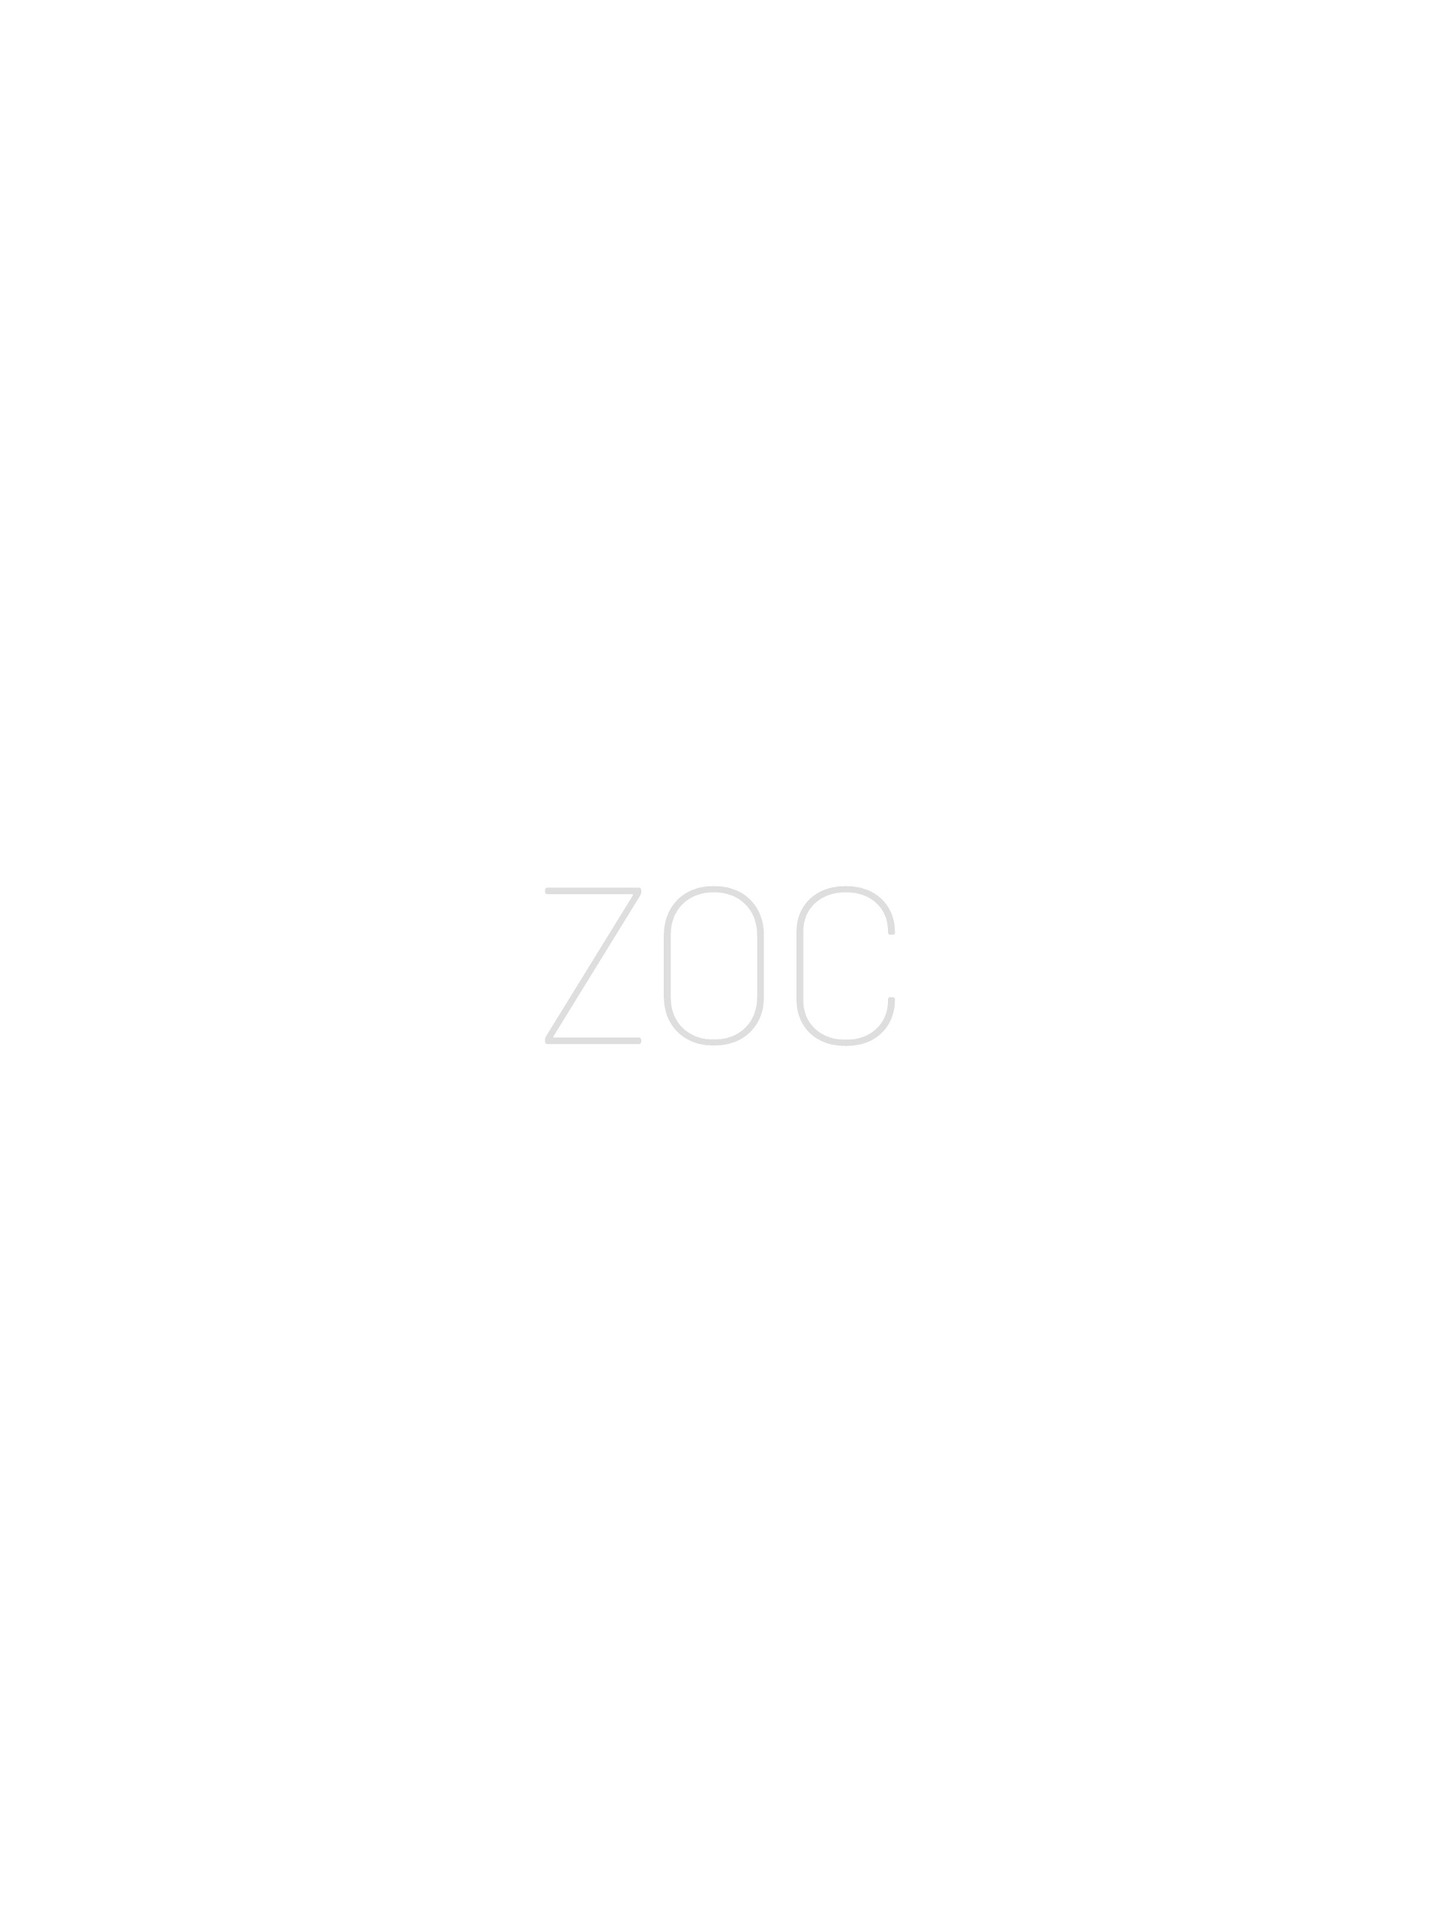 Zoc (2022-): Chapter 1 - Page 2